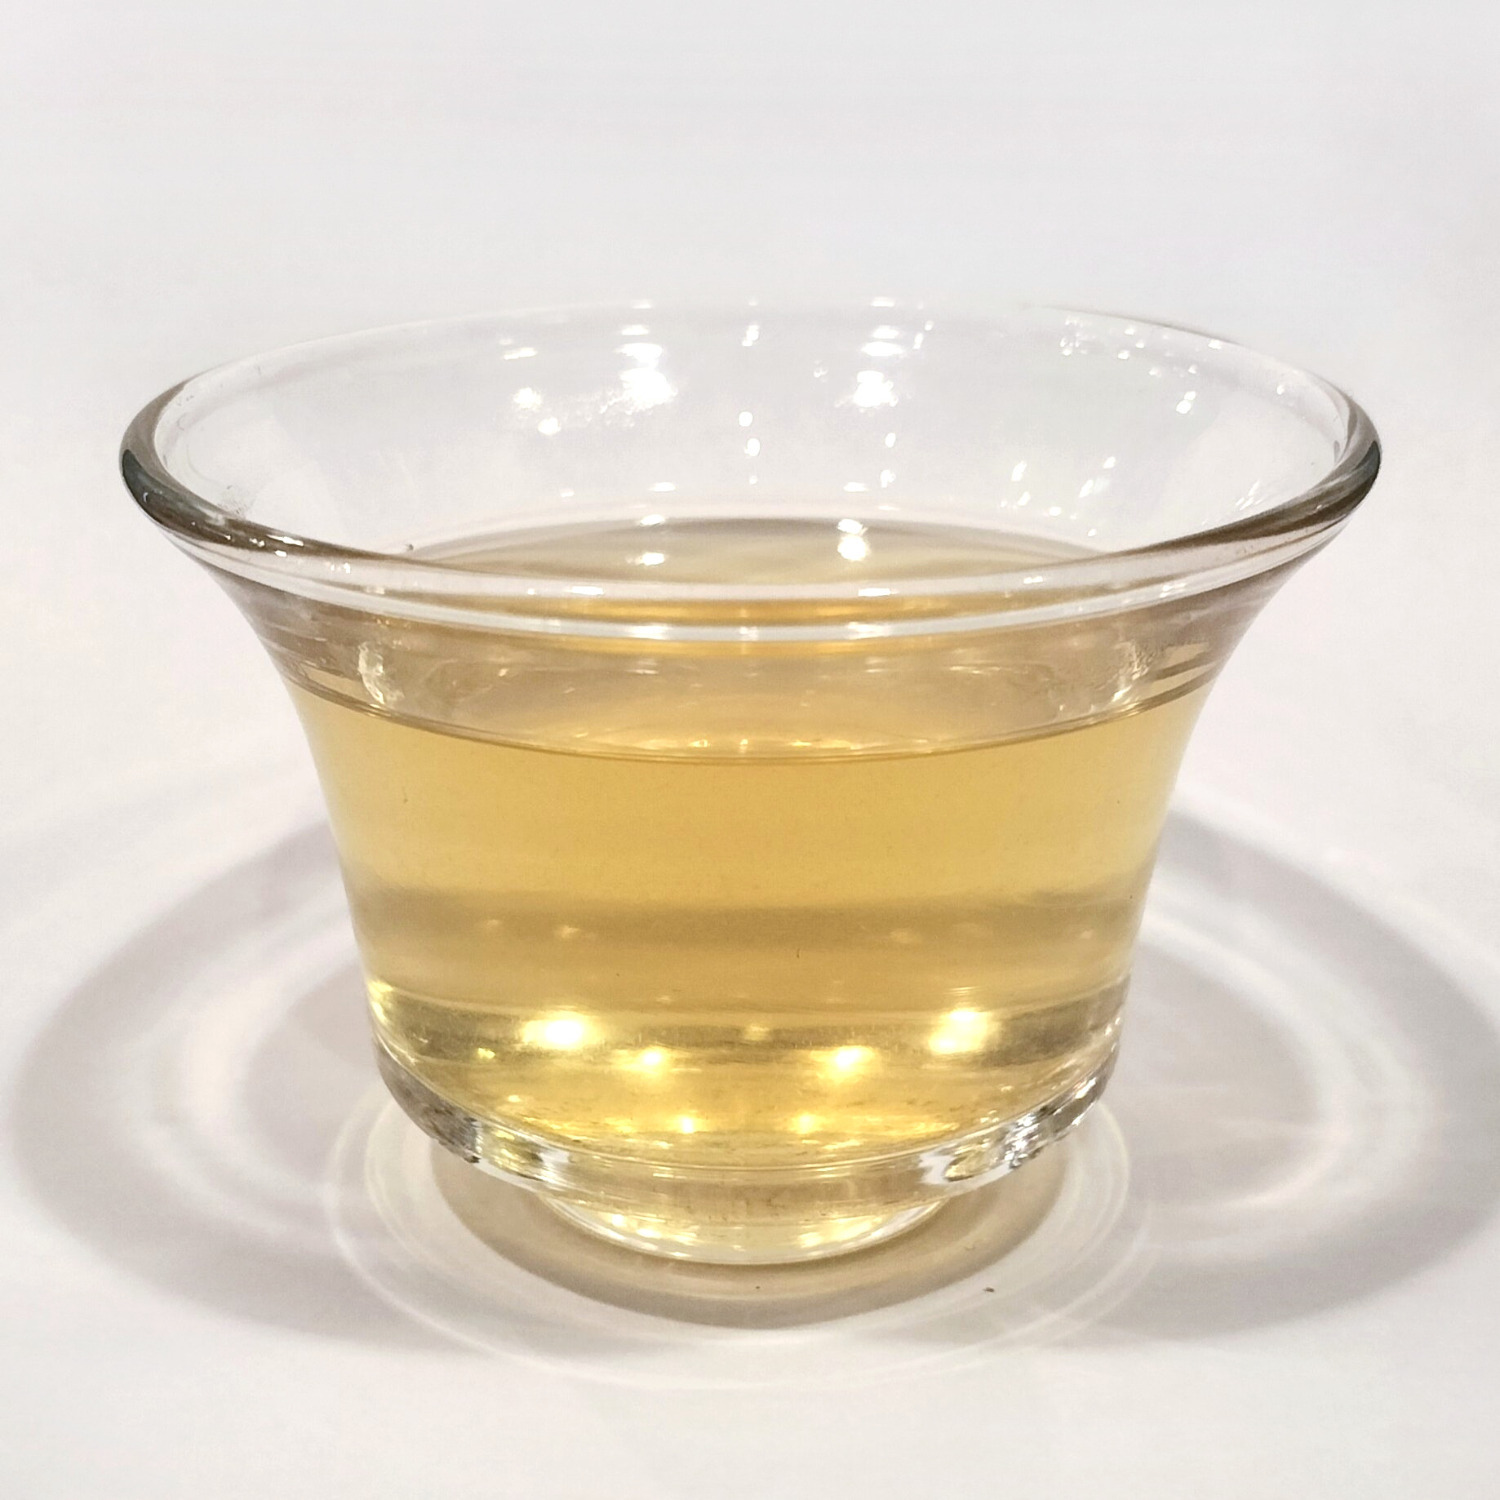 文山包種茶(30g)